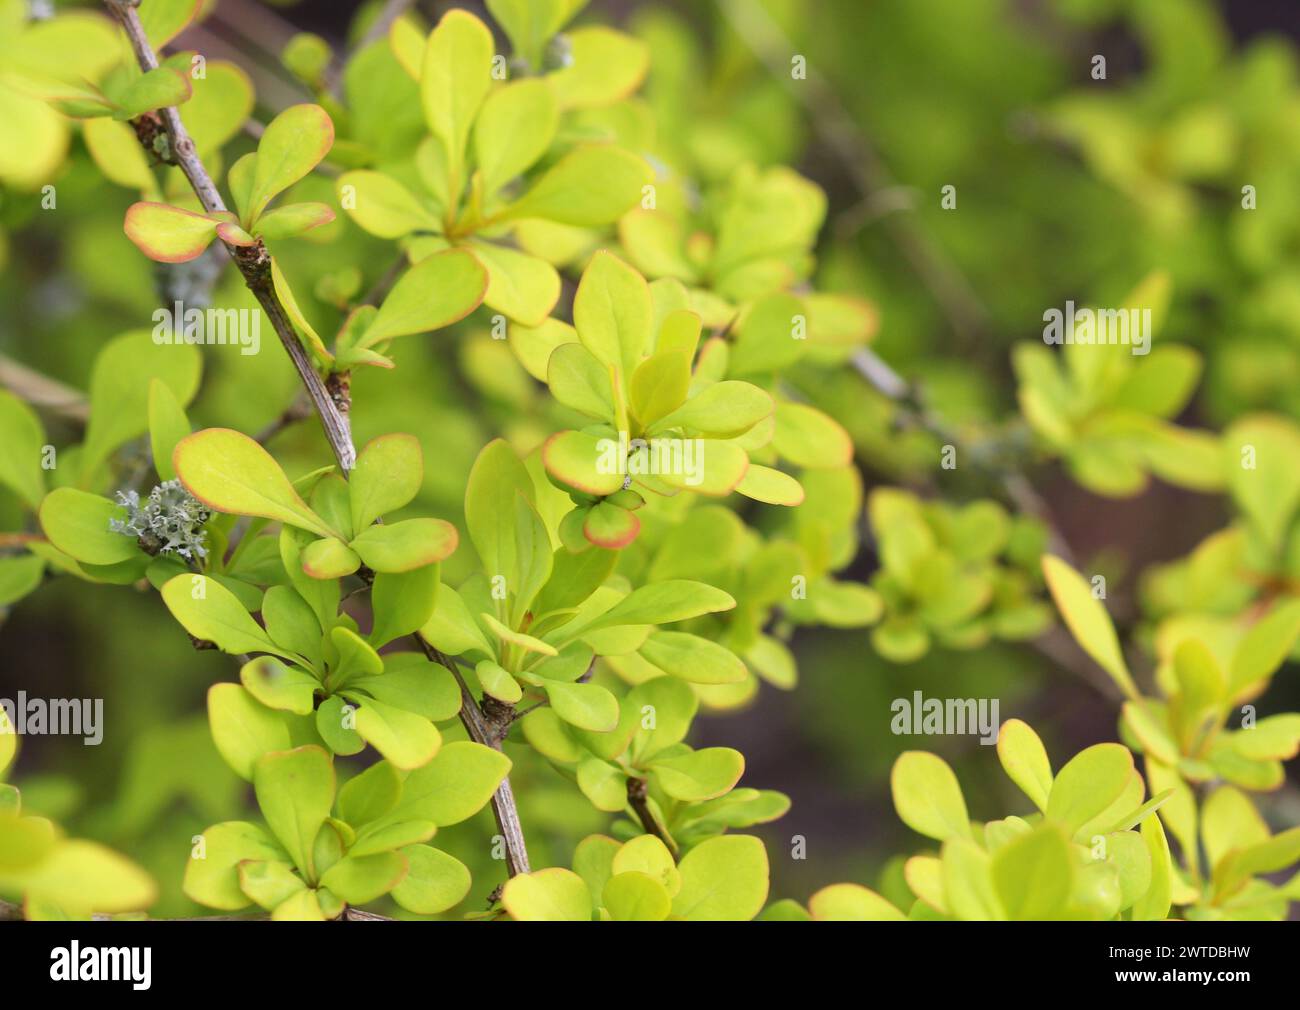 A close up of the foliage of Berberis thunbergii 'Aurea' Stock Photo